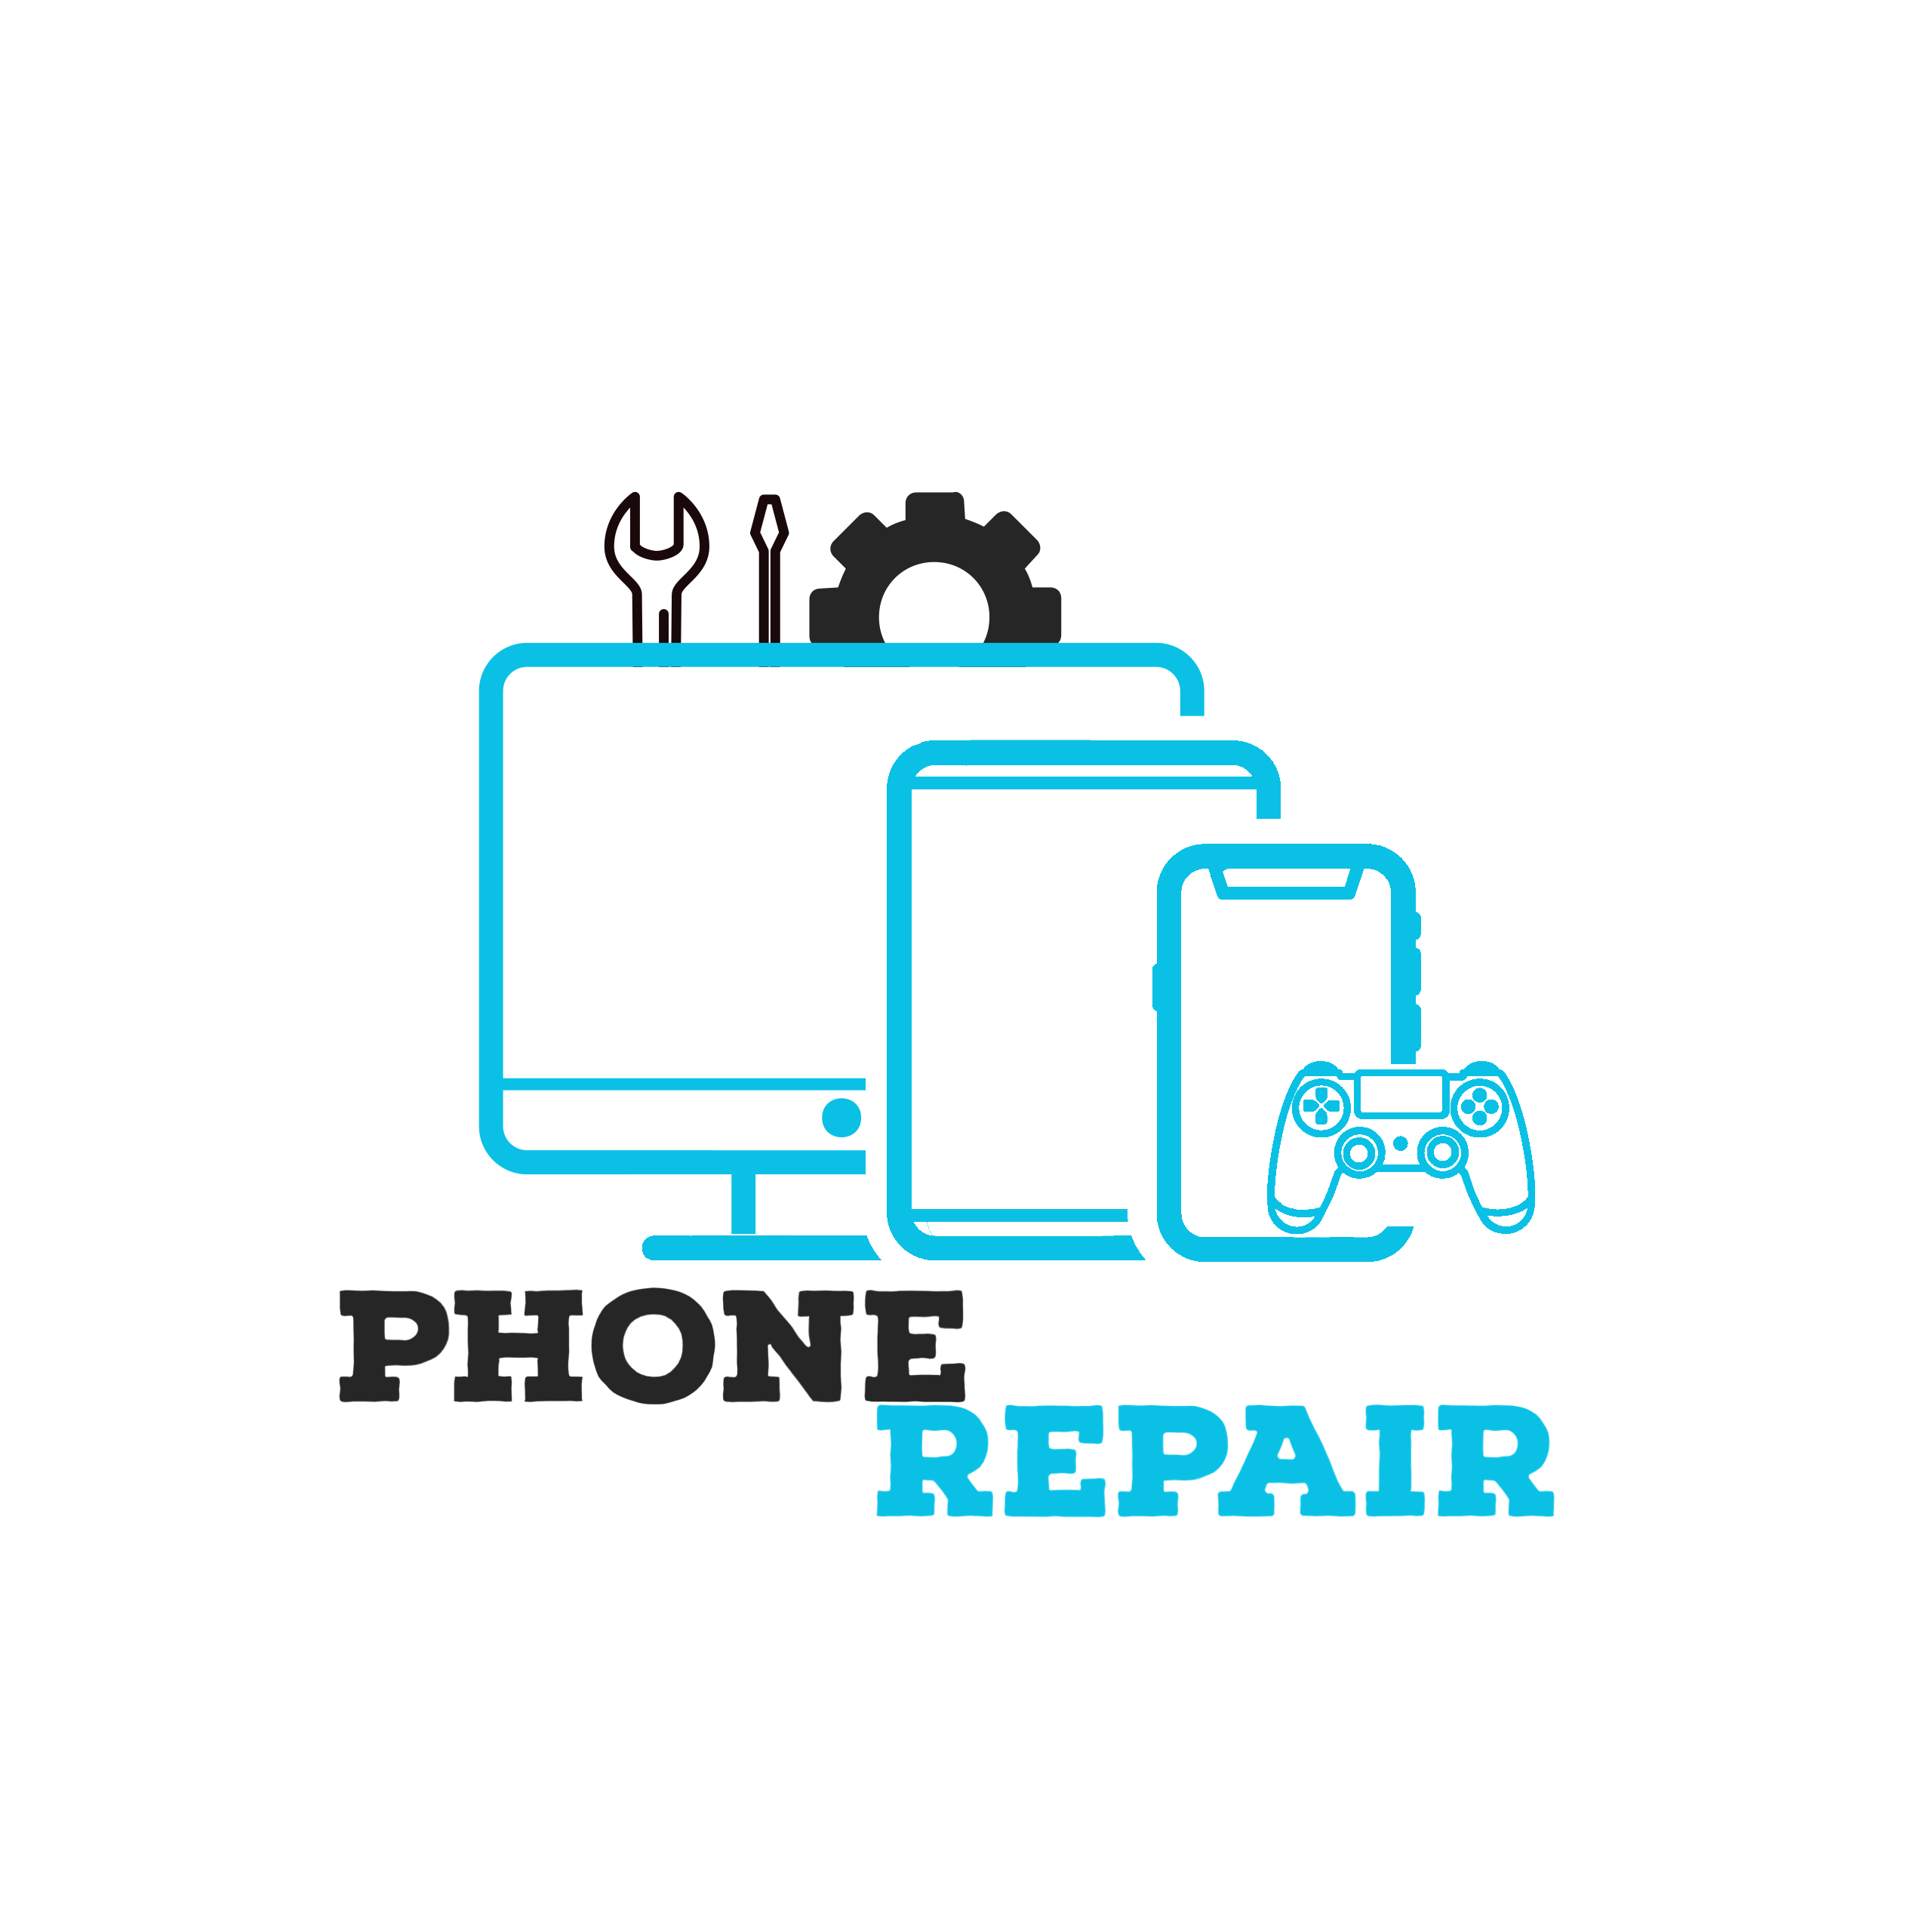 Phone Repair – Premier Device Repair in Clifton, NJ